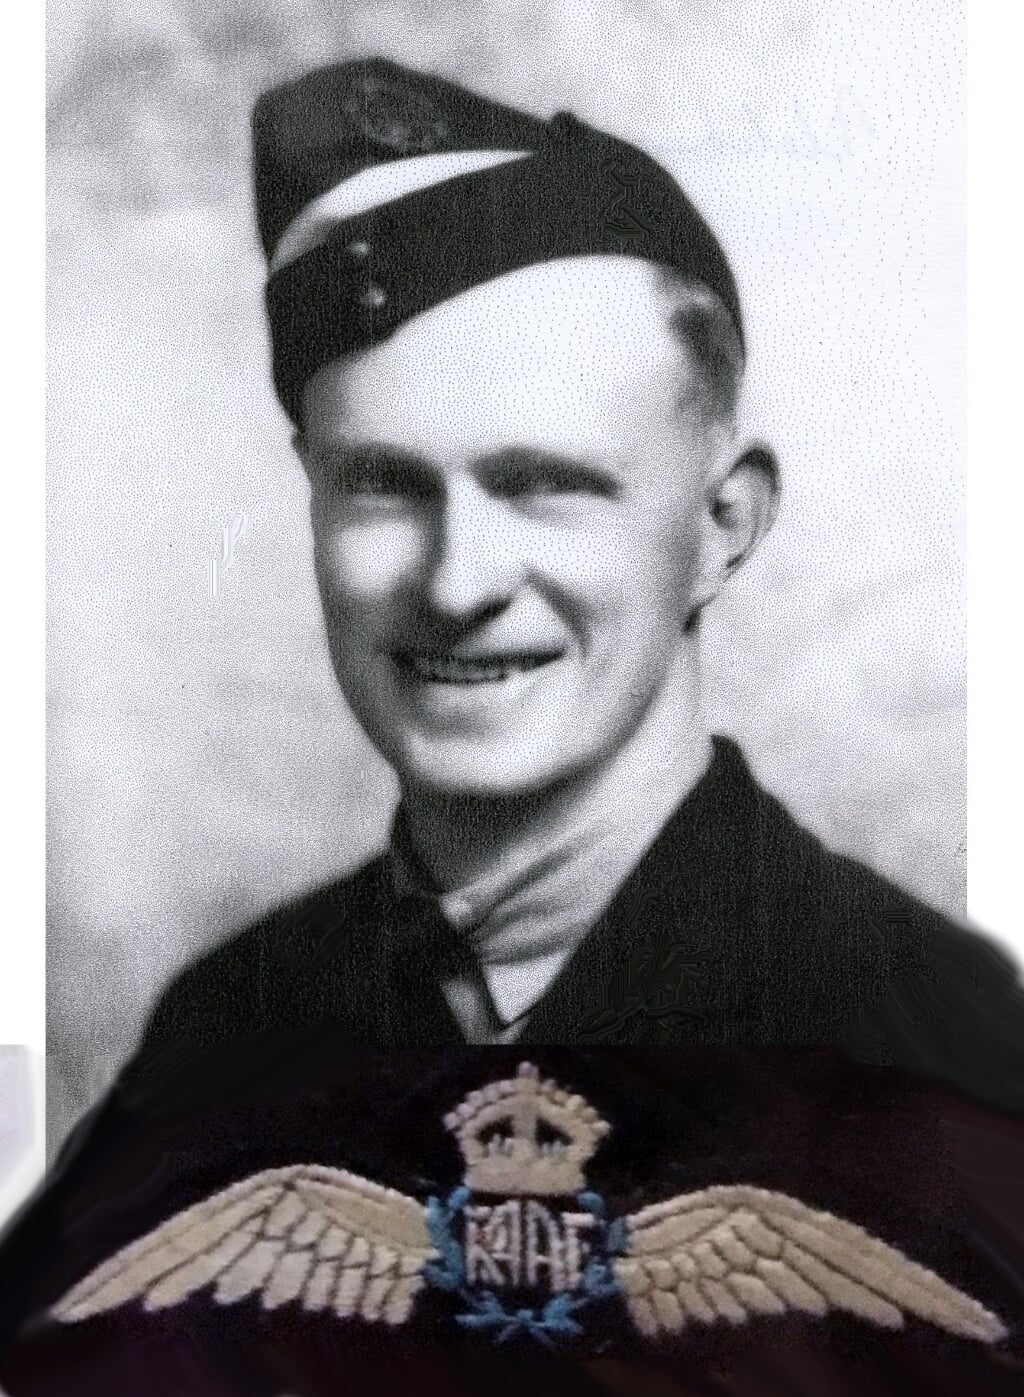 Fletcher Green die op 12 juni 1943 met zijn crew neerstortte in Overdiemen.